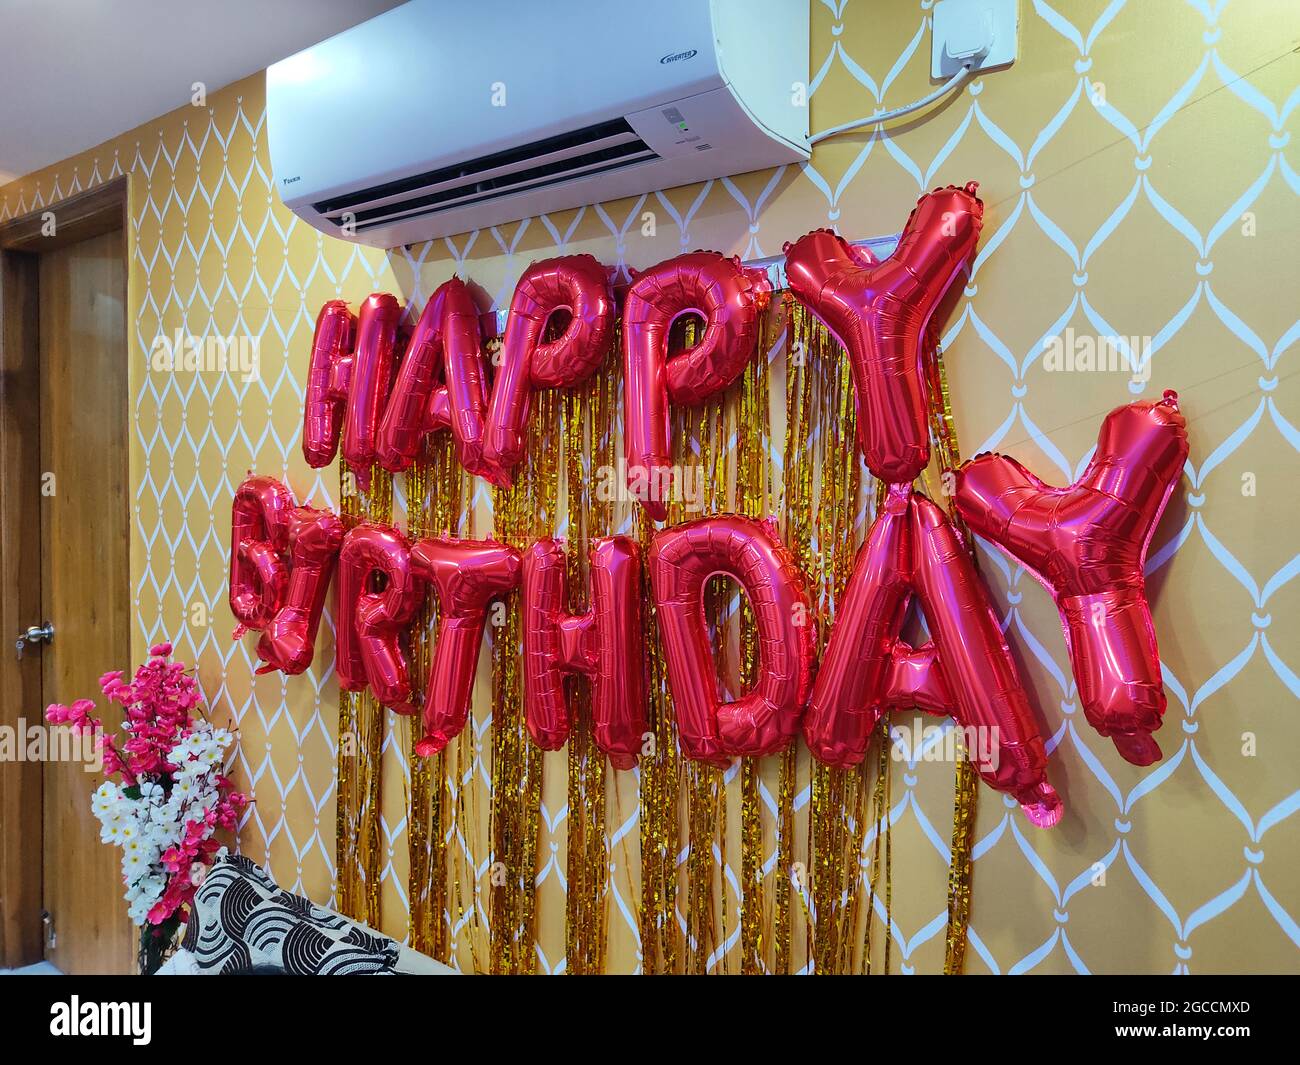 Banderole suspendue à motif ballons d'or joyeux anniversaire sur le mur. Décorations de fête d'anniversaire. Intérieur de la maison. Banque D'Images